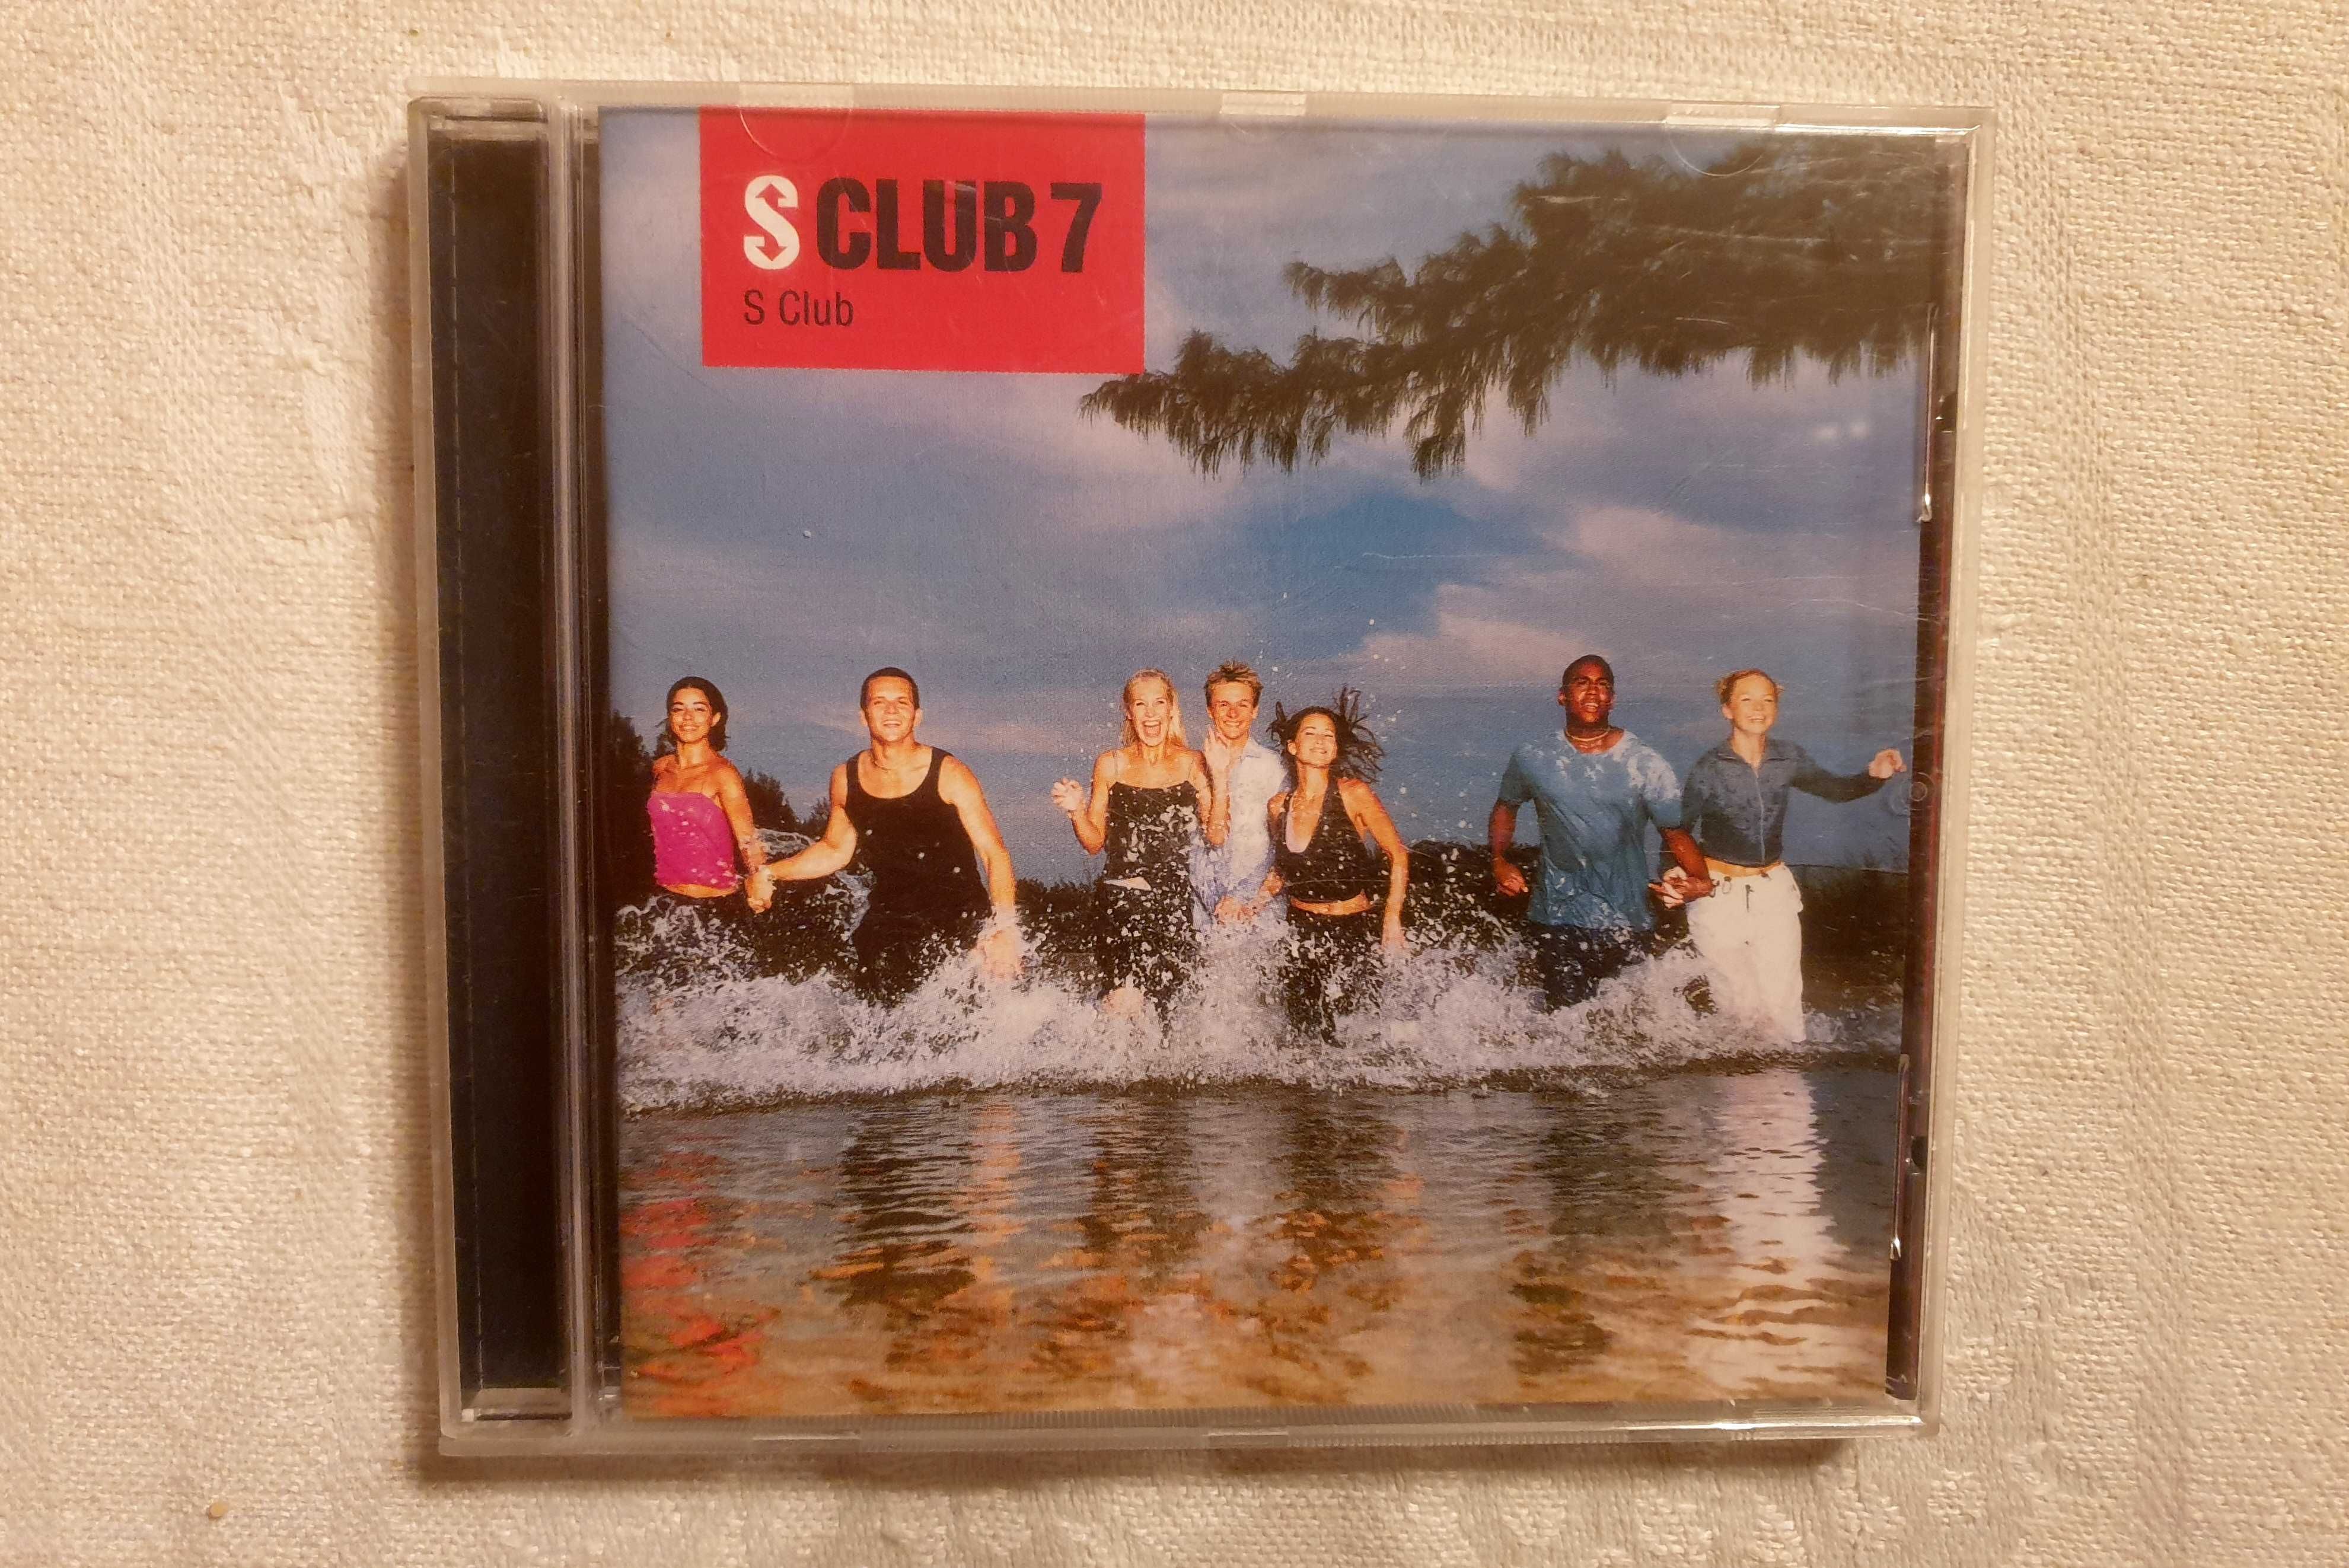 S Club 7 - S Club CD